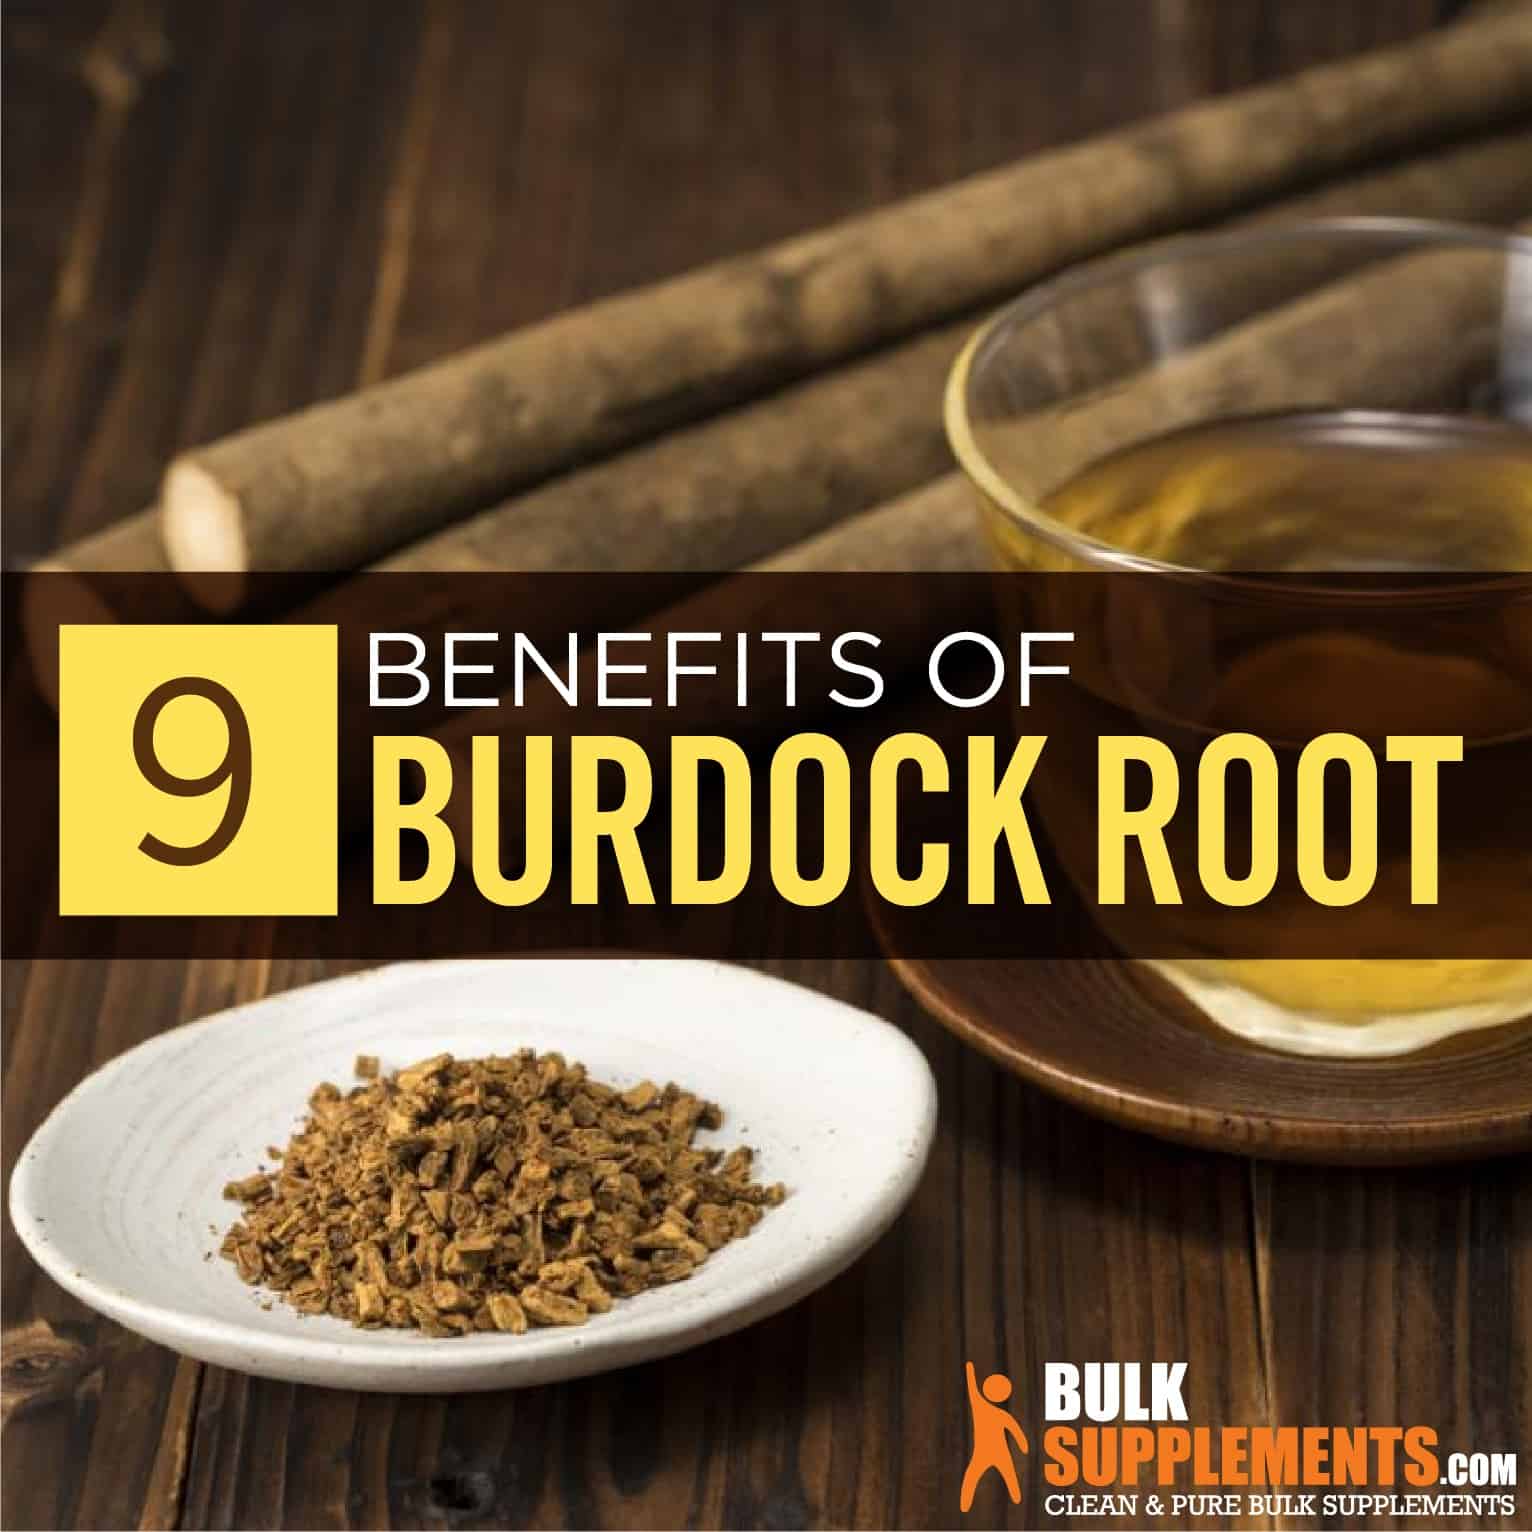 Burdock Root